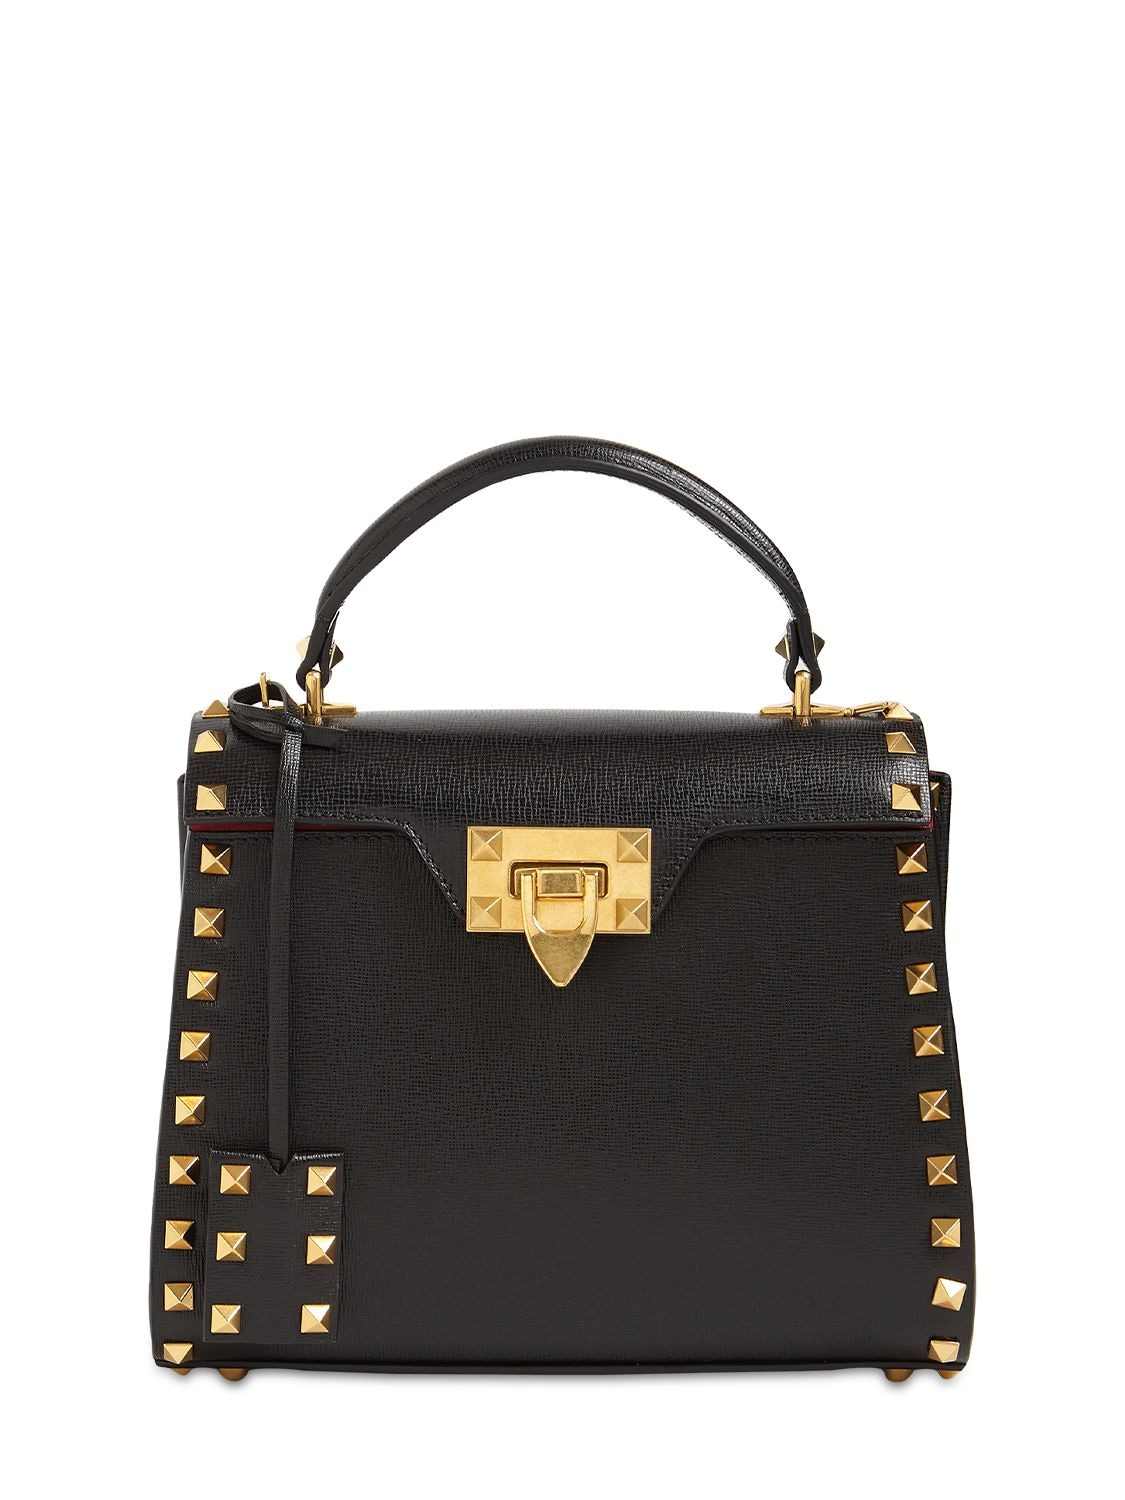 Valentino Garavani Small Alcove Rockstud Leather Top Handle Bag In